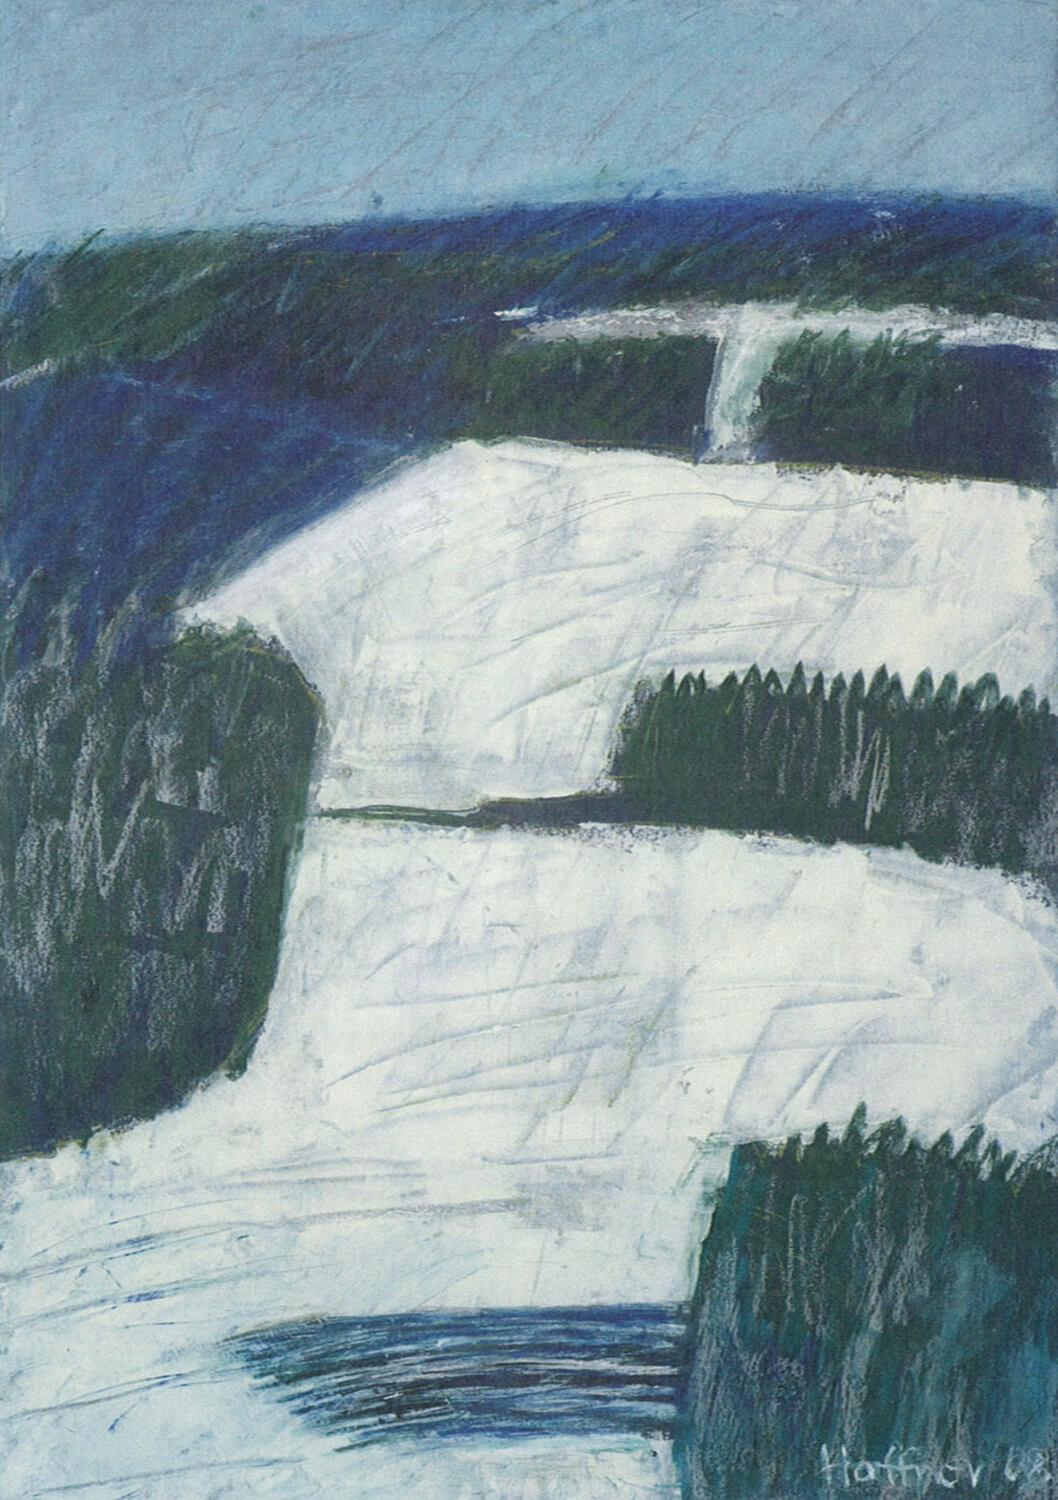 Sarah Haffner, Schnee II, 2008, Tempera, Ölkreide auf Karton, 70 x 50 cm